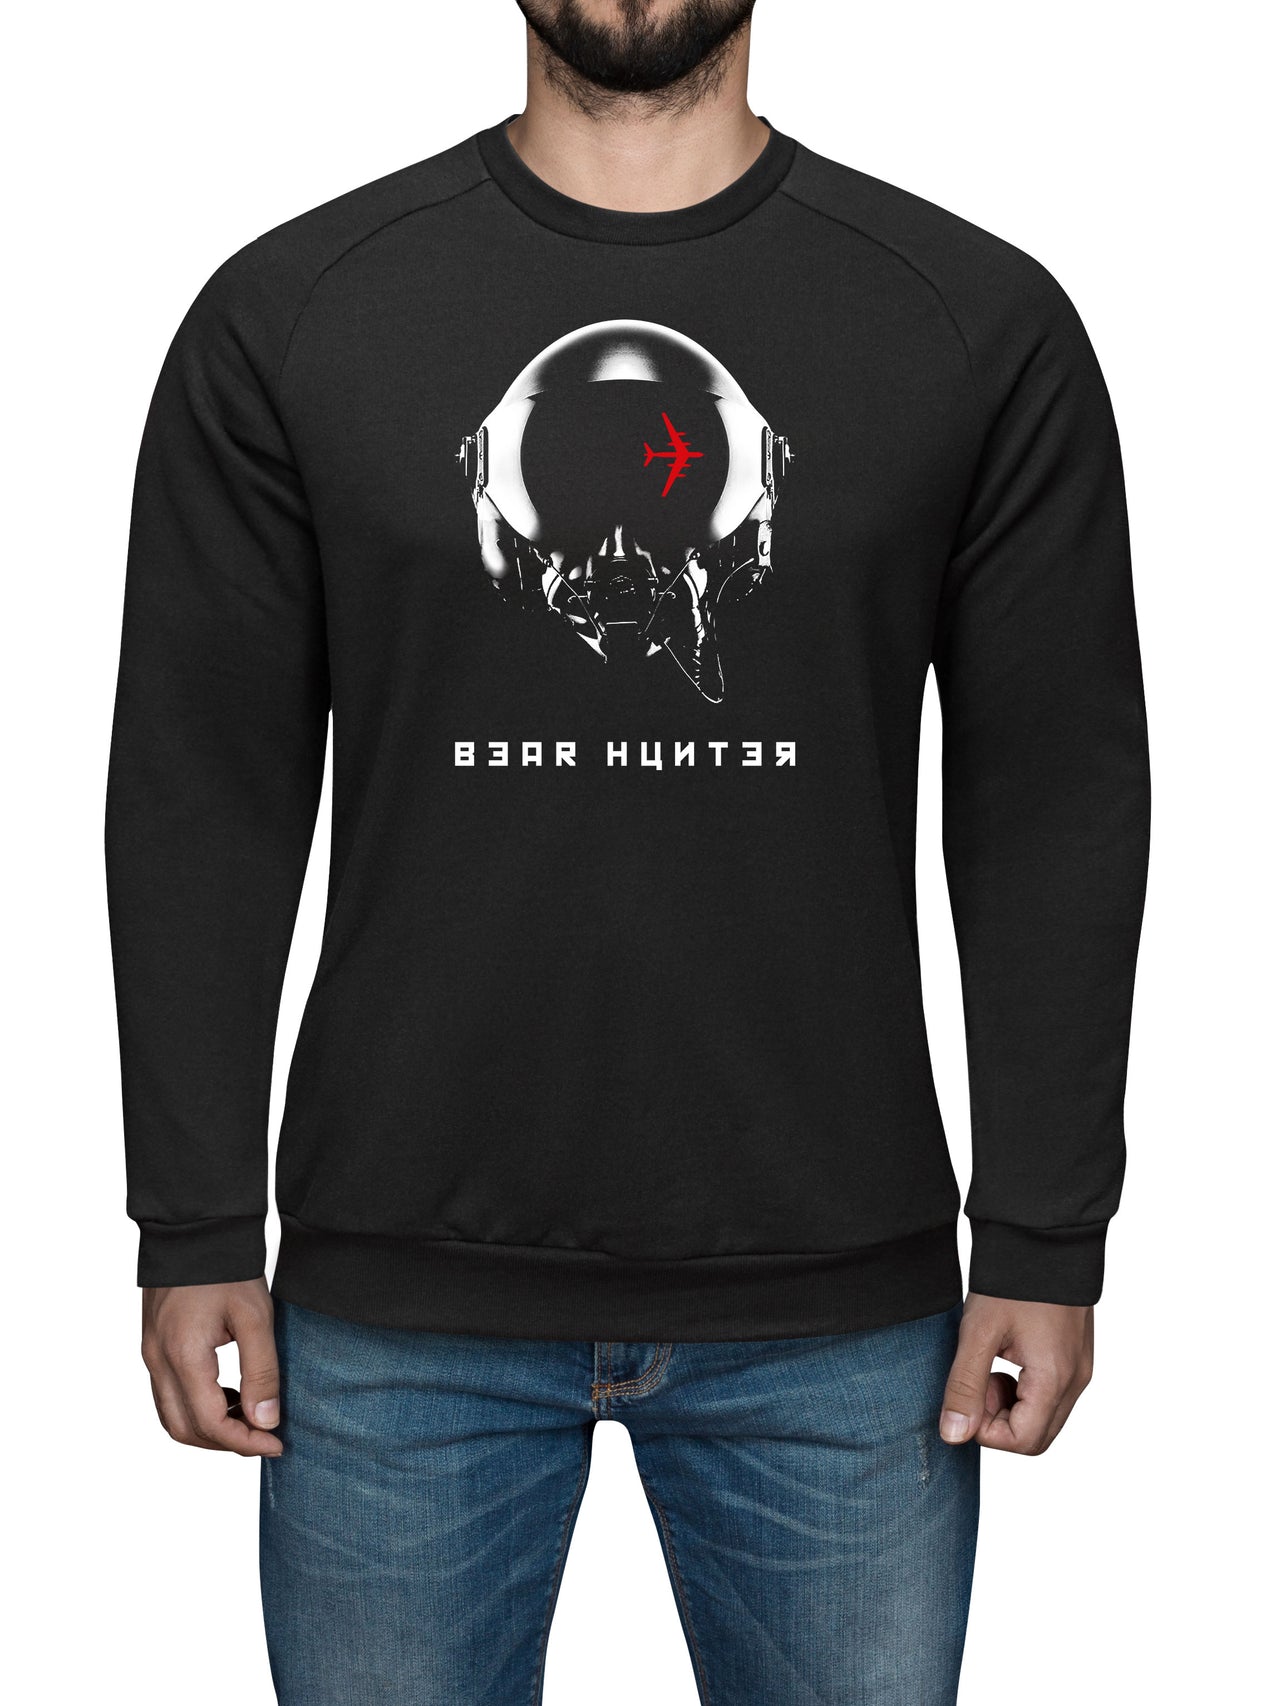 Bear Hunter - Sweat Shirt